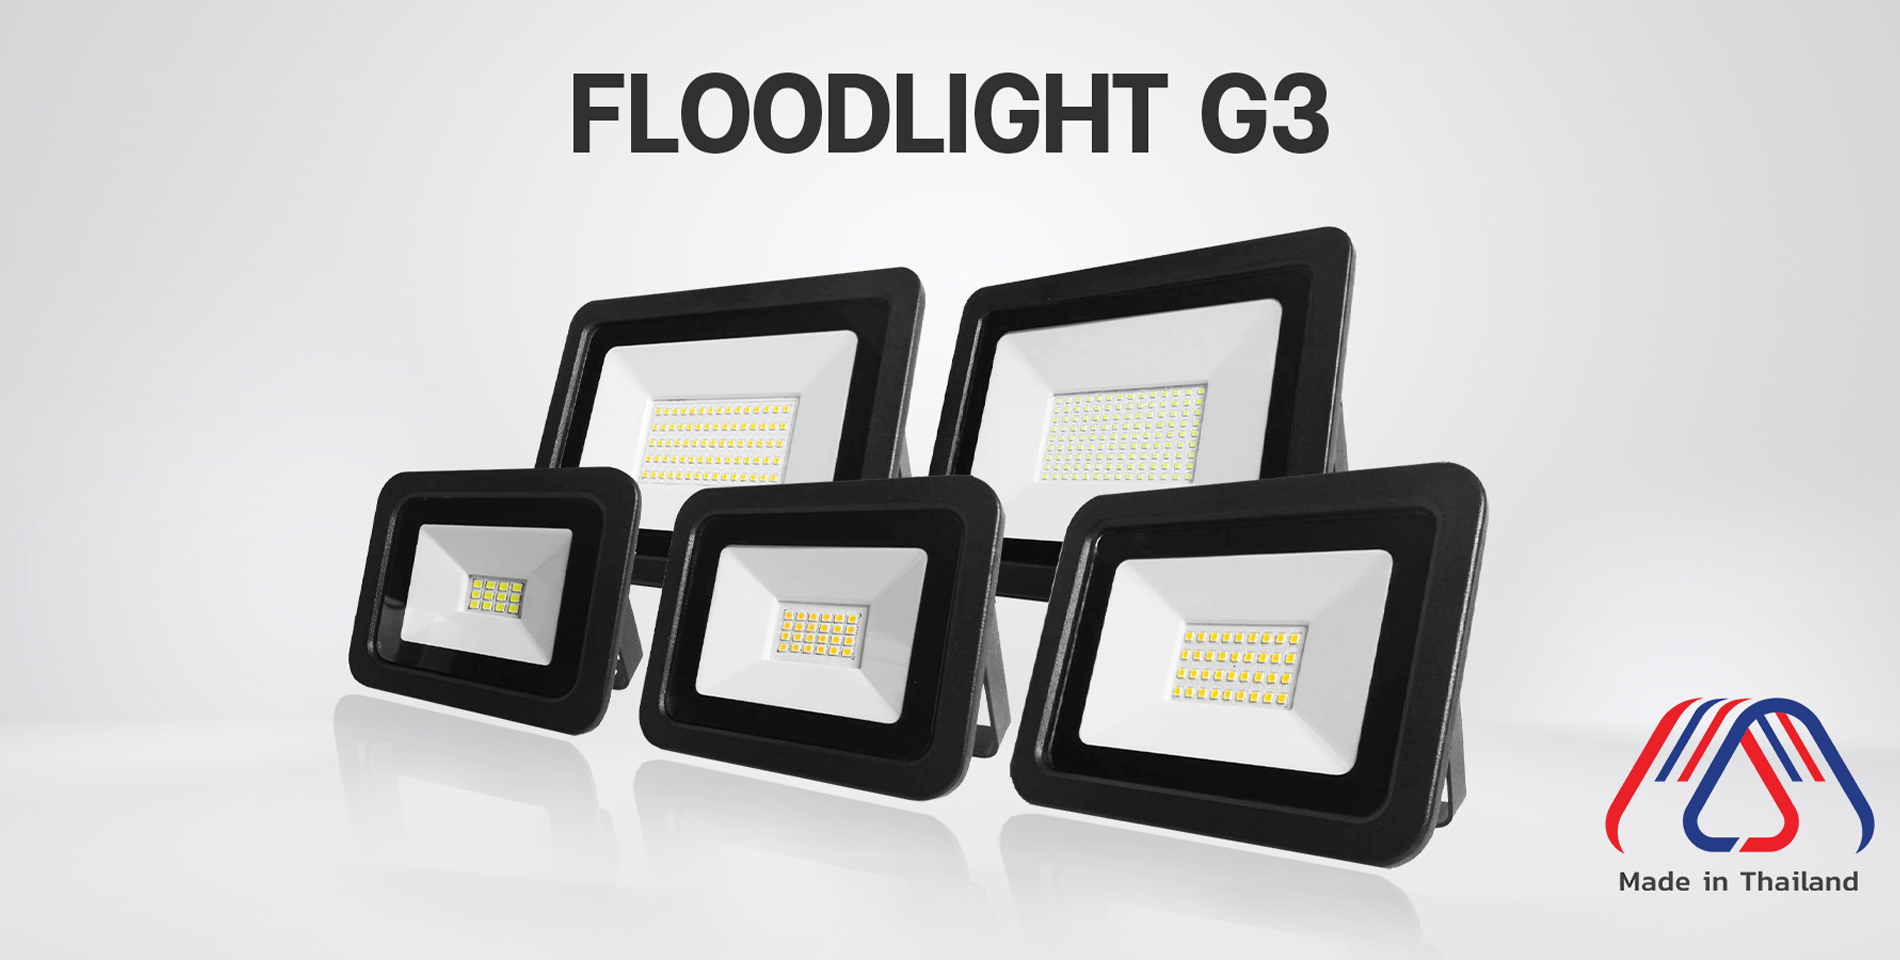 1 FLOODLIGHT G3